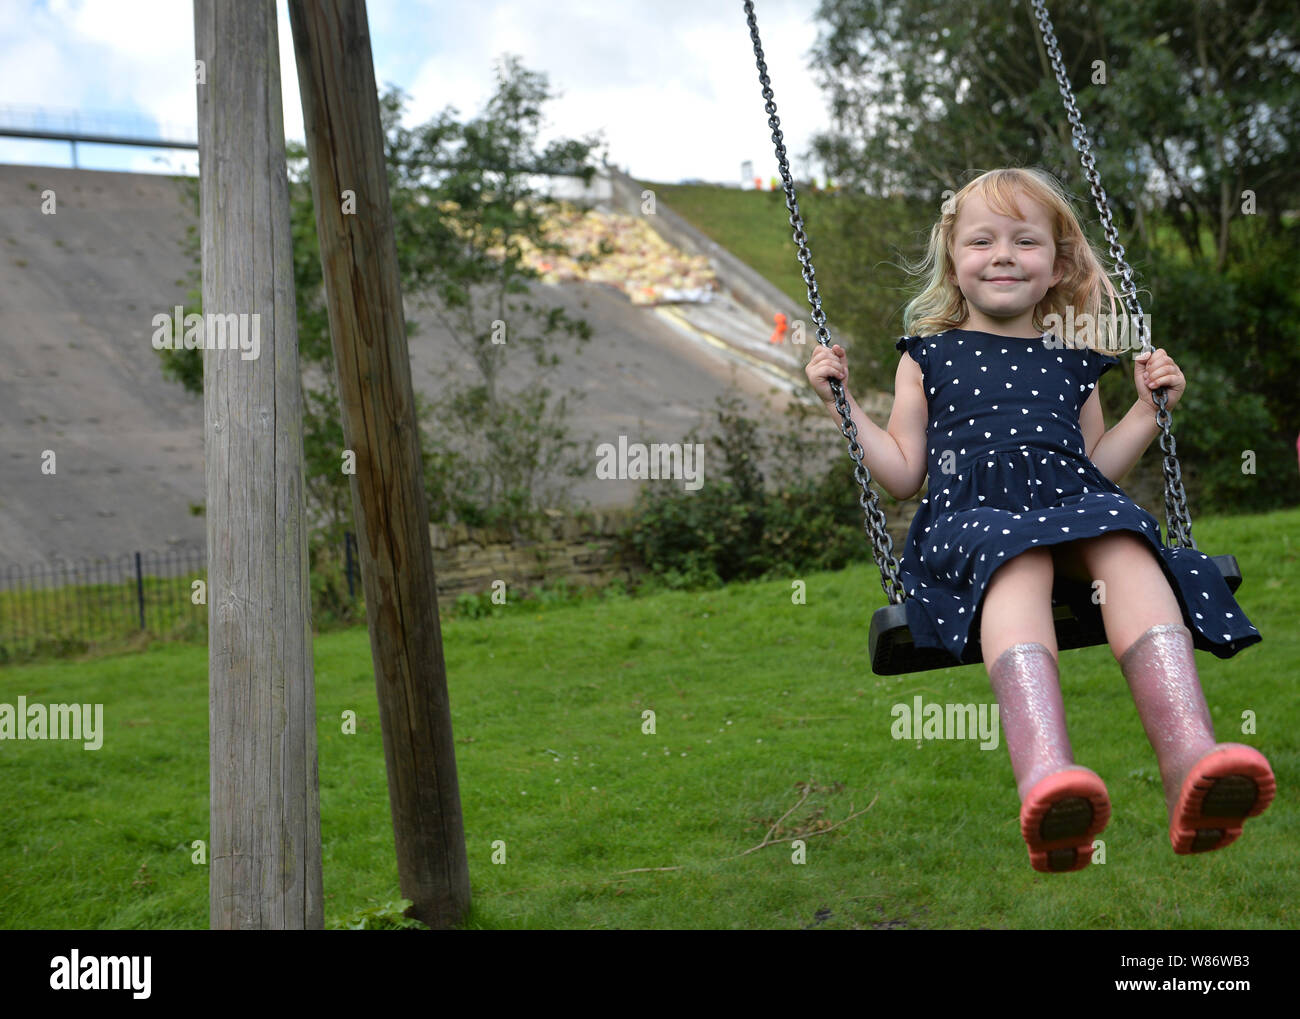 Étant donné la permission des parents, Lala Holden, 5, joue sur une balançoire, tandis que dans le travail de fond continue de soutenir le réservoir du barrage de Toddbrook près du village de Whaley Bridge, Derbyshire, après qu'il a été endommagé d'une forte pluie. Banque D'Images